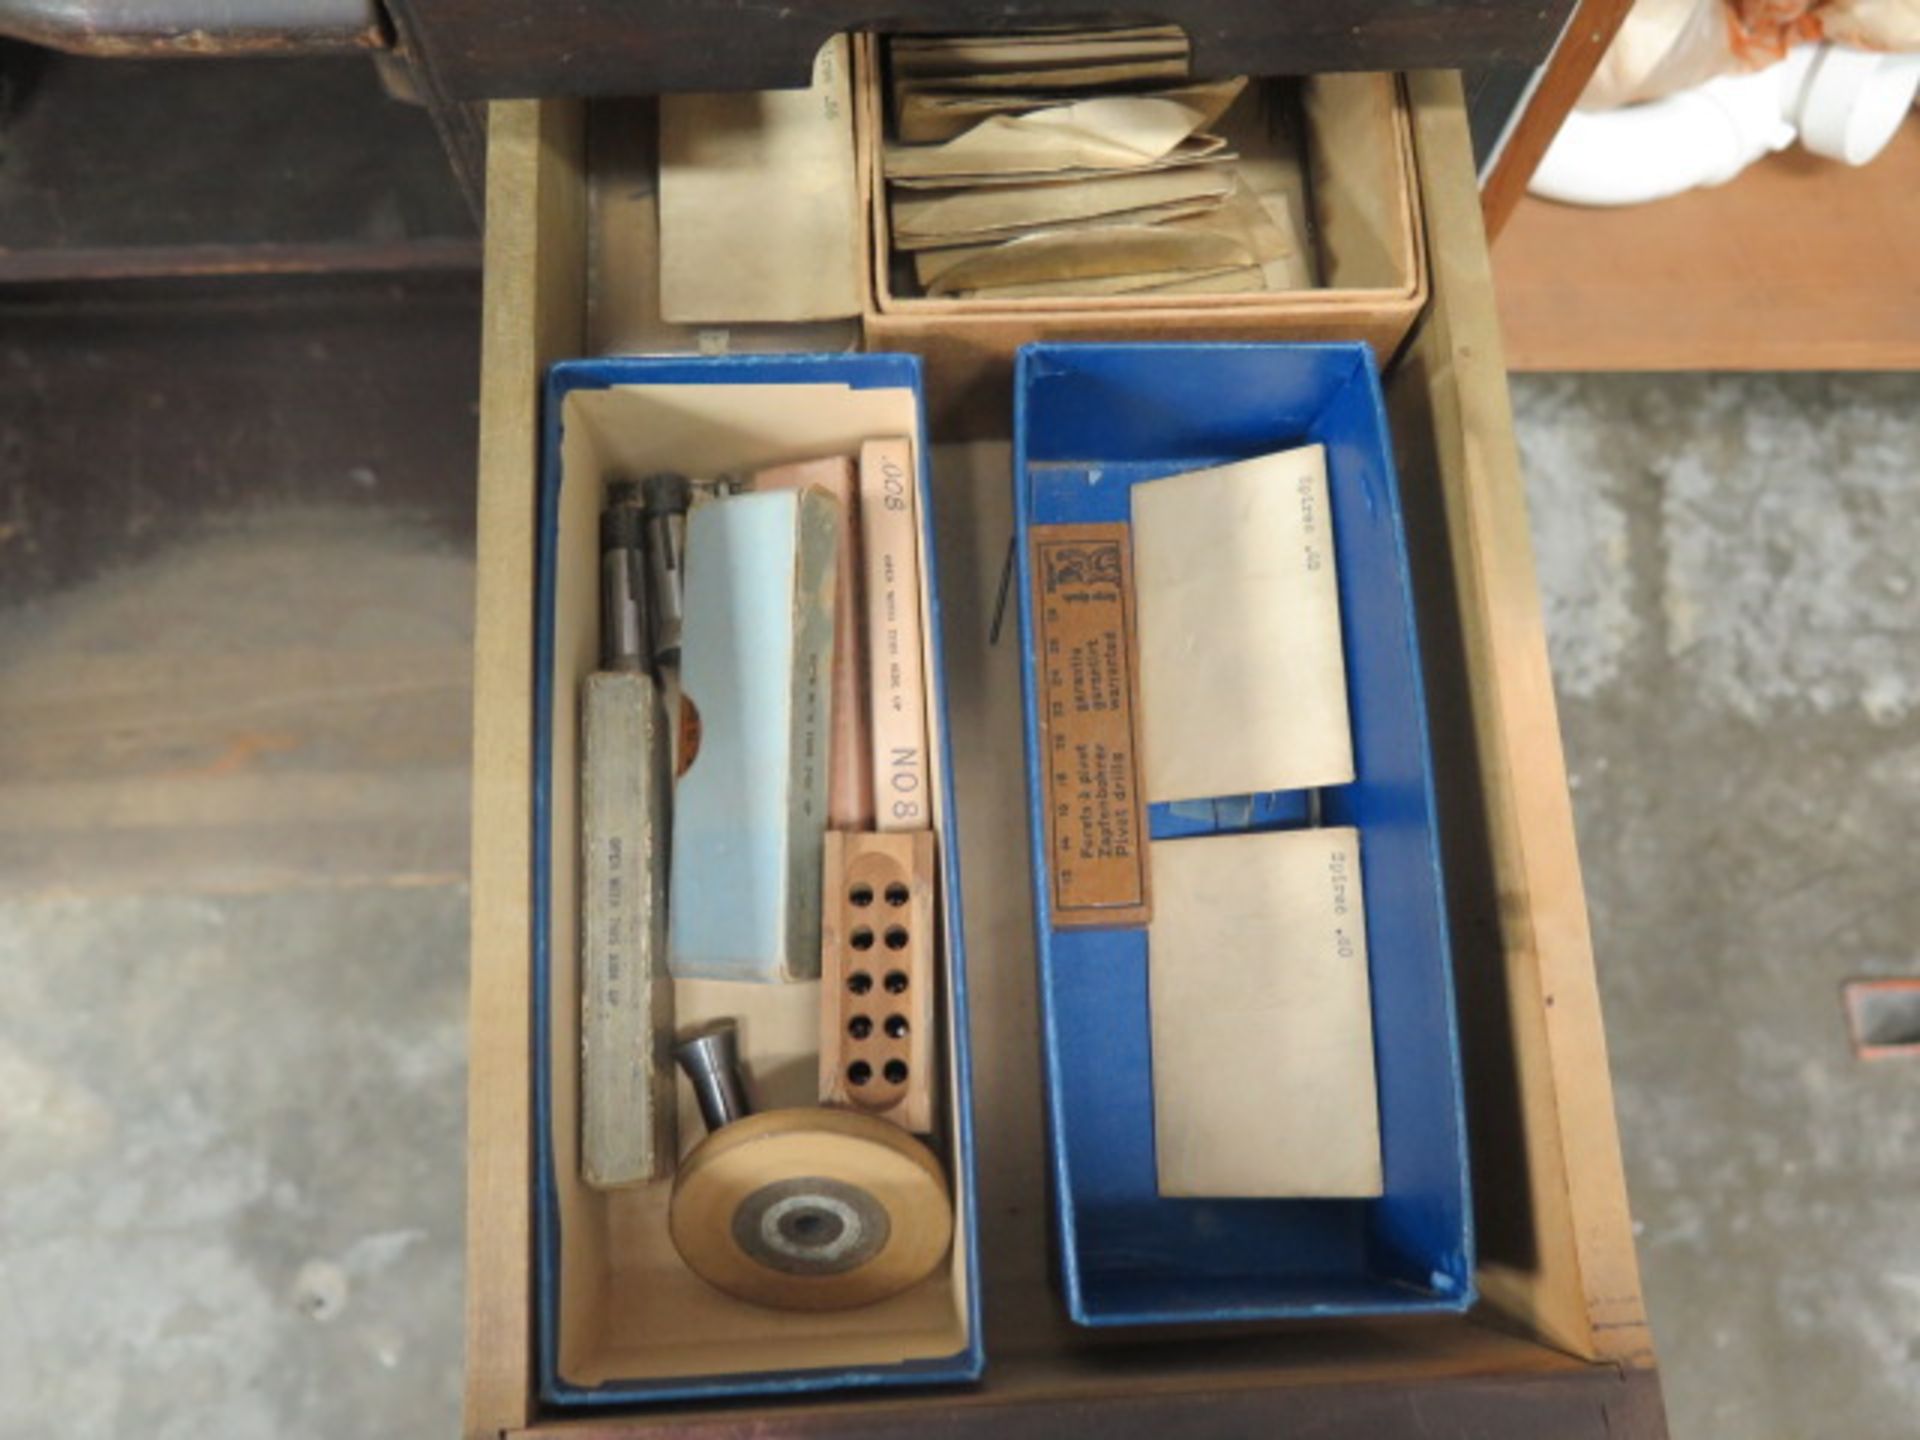 Derbyshire Watch Makers Lathe w/ 4-Speeds, Cross Slide, Collet Sets, Tooling, JH Rosenberg Cabinet - Image 9 of 11